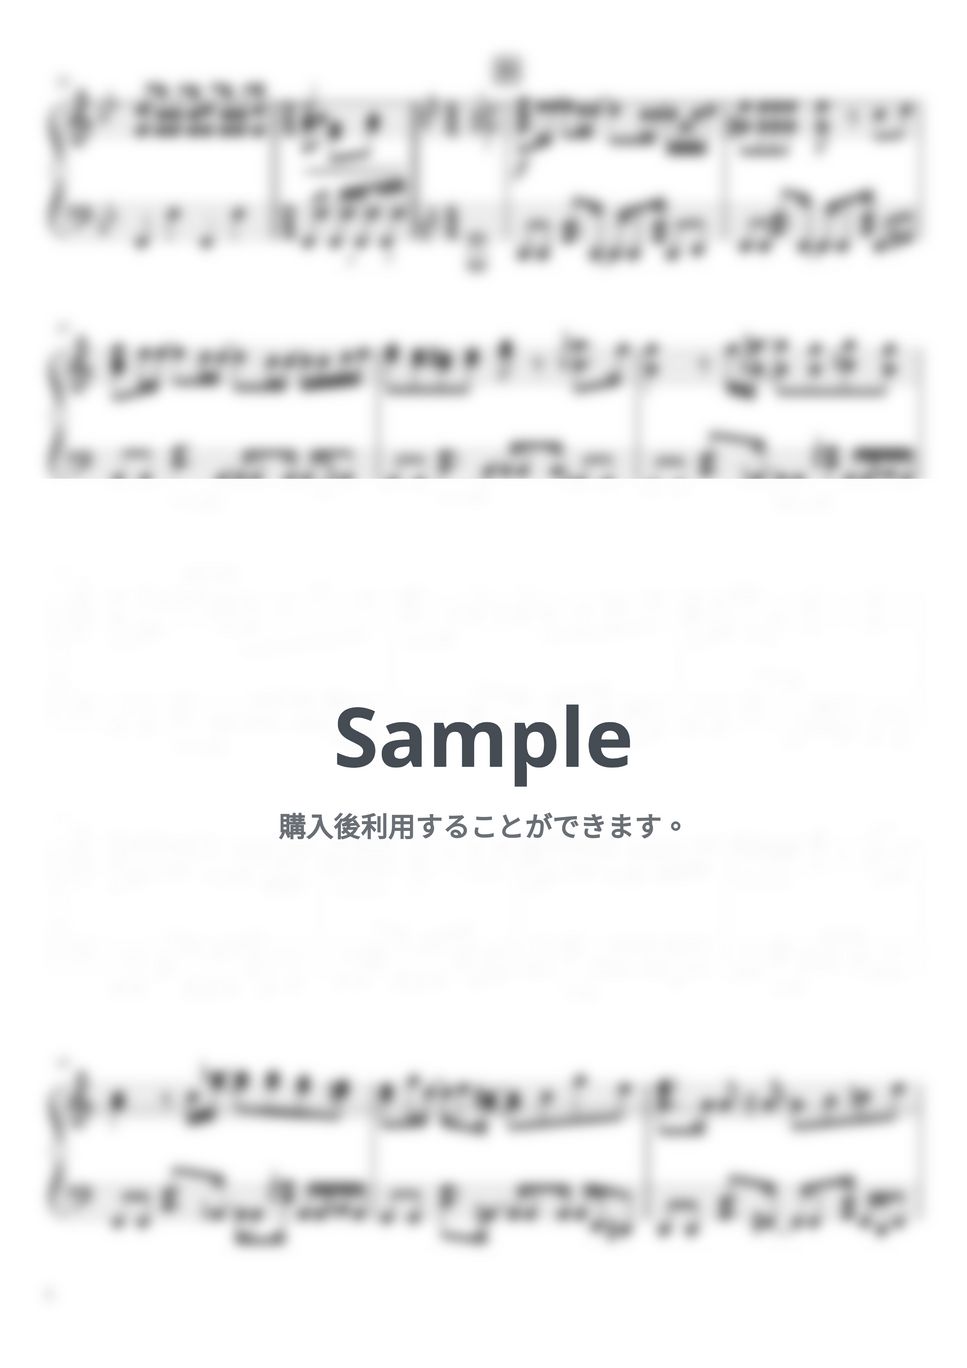 なにわ男子 - ただいま (6th Single「I Wish」/初回限定盤１収録曲) by ピアノぷりん